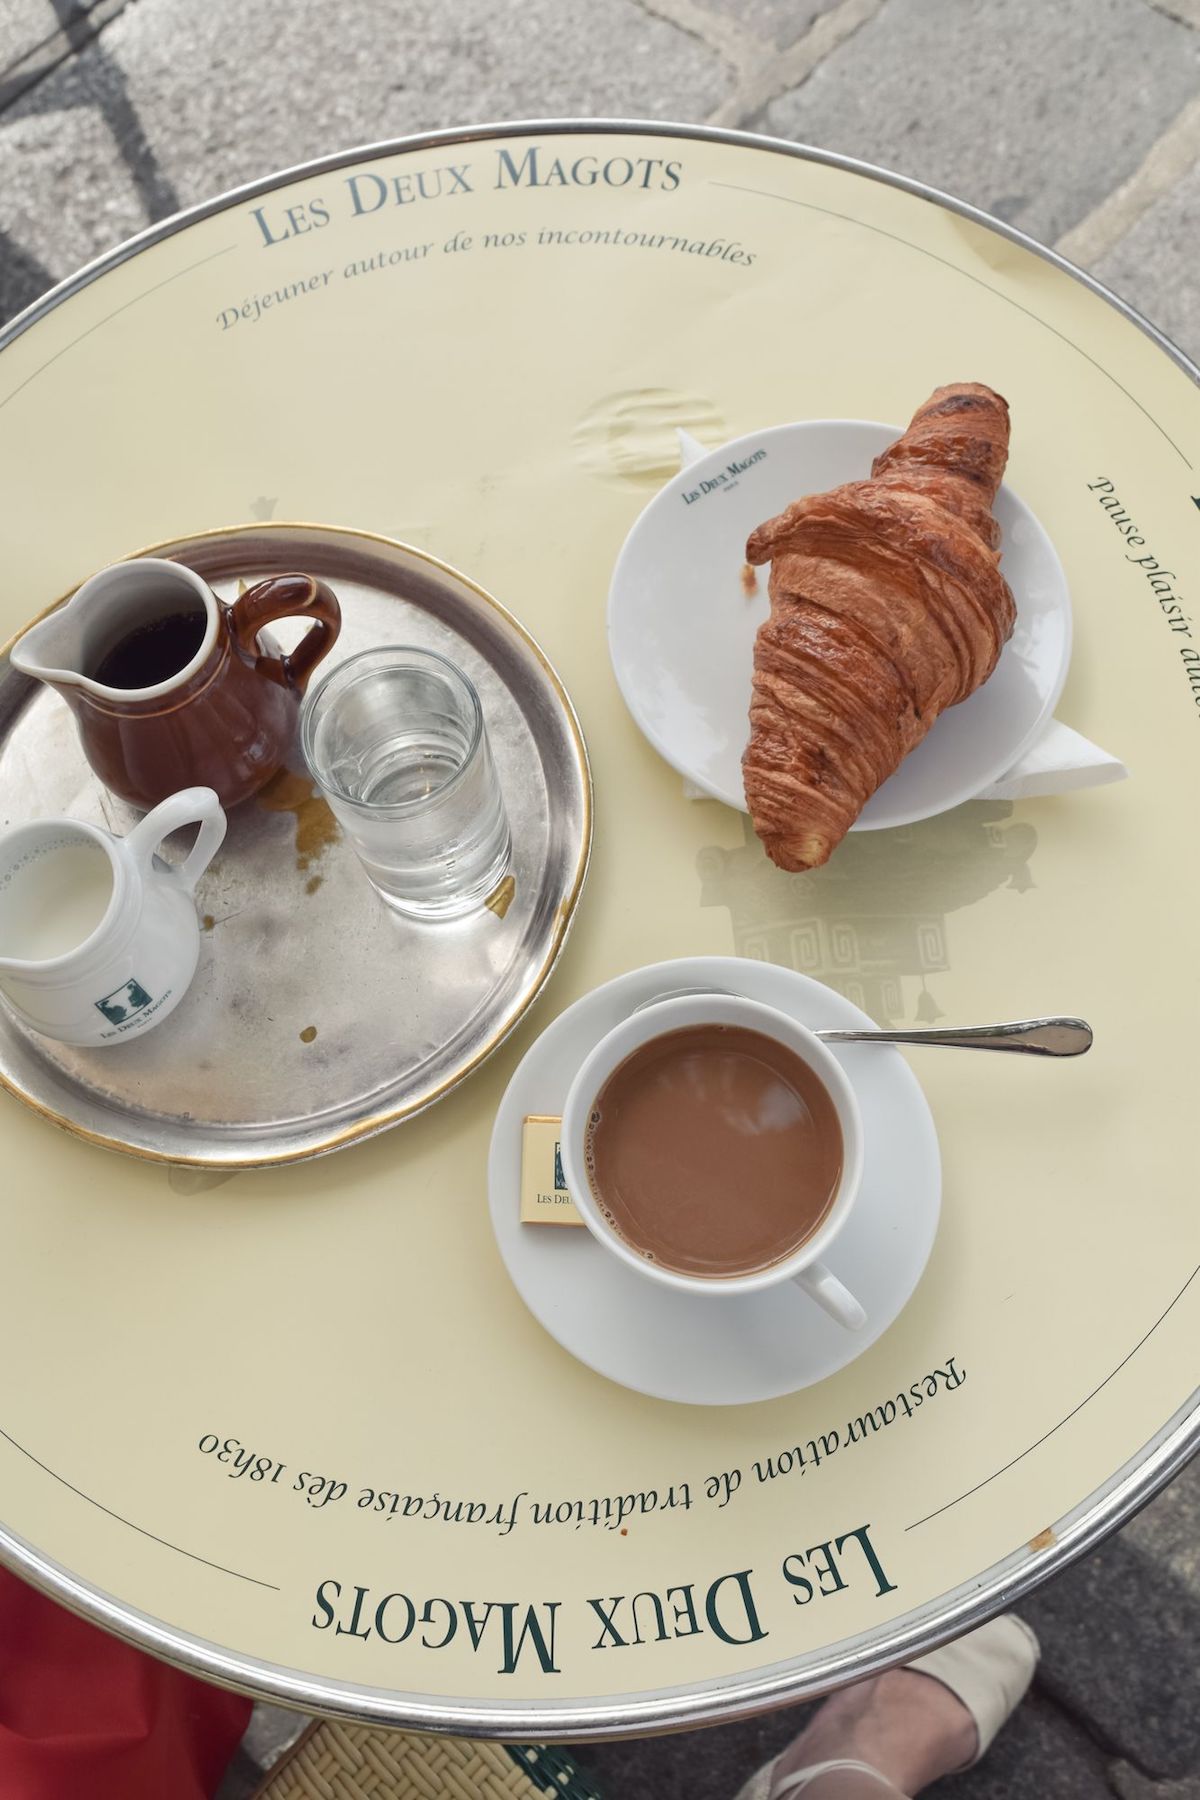 Les Deux Magots Café: a Saint-Germain-des-Prés Classic